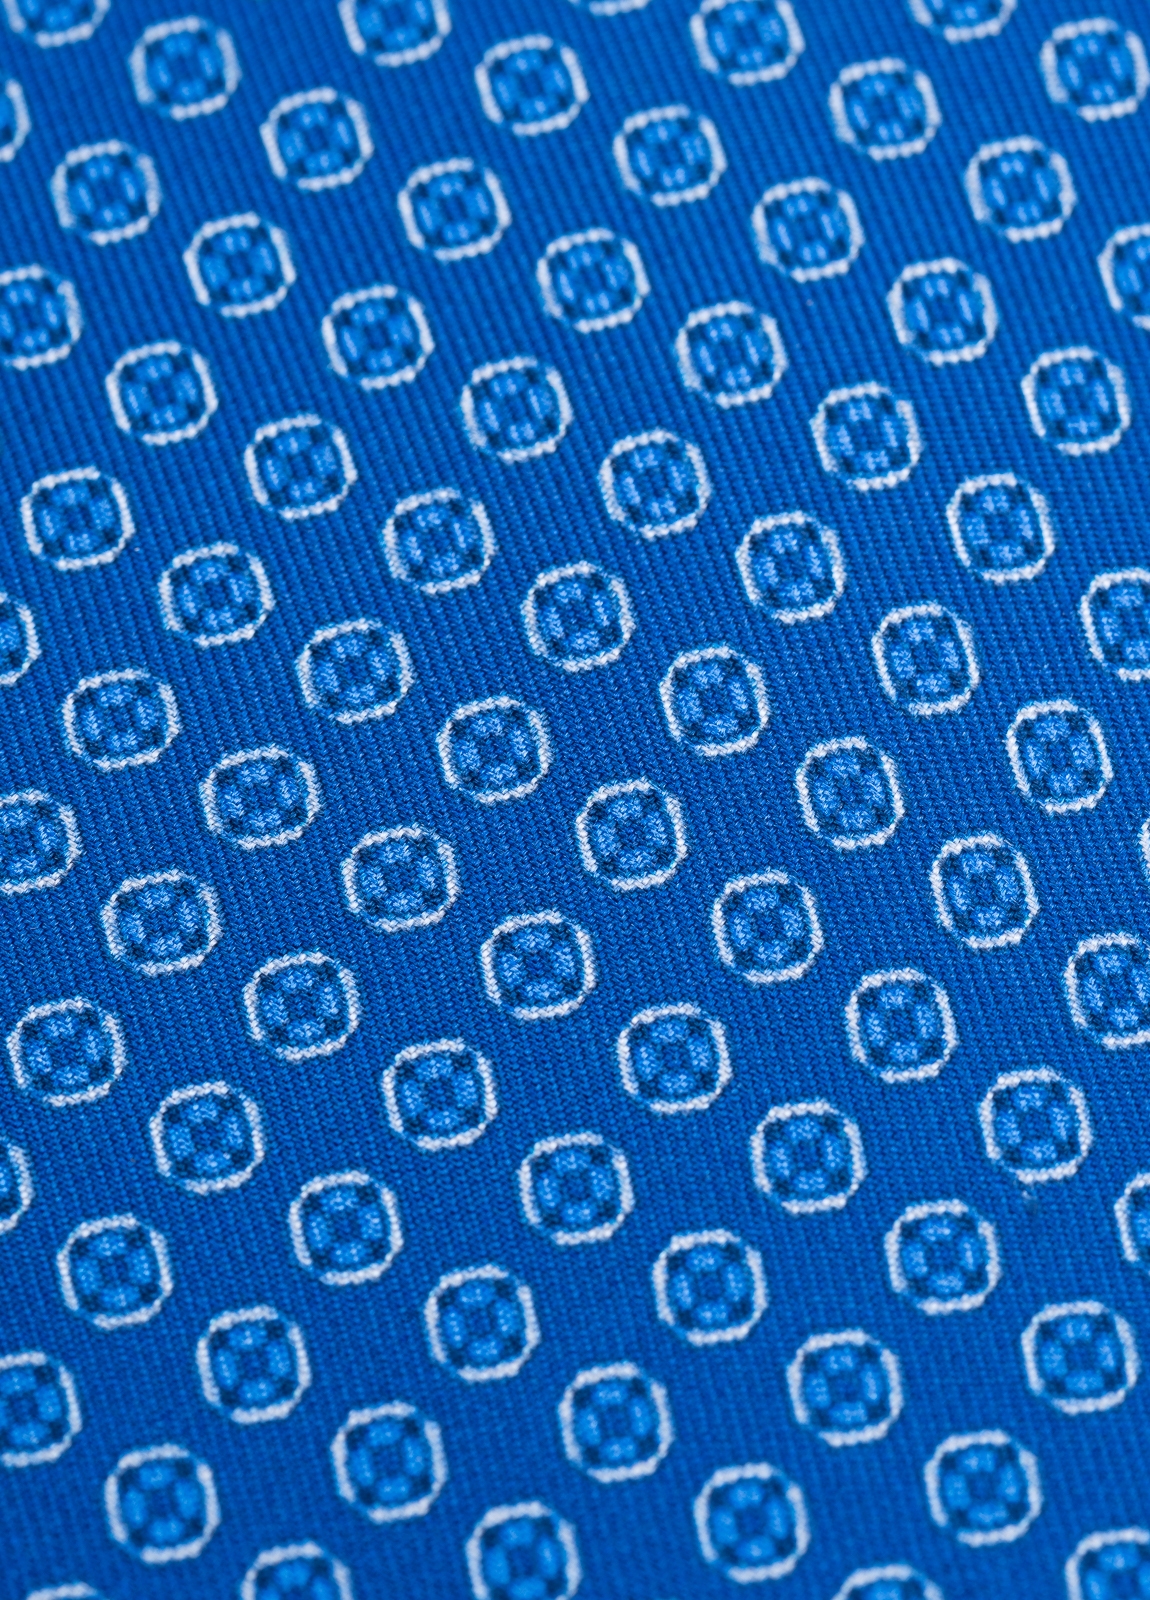 Corbata FUREST COLECCIÓN color azulón con dibujo geométrico - Ítem2